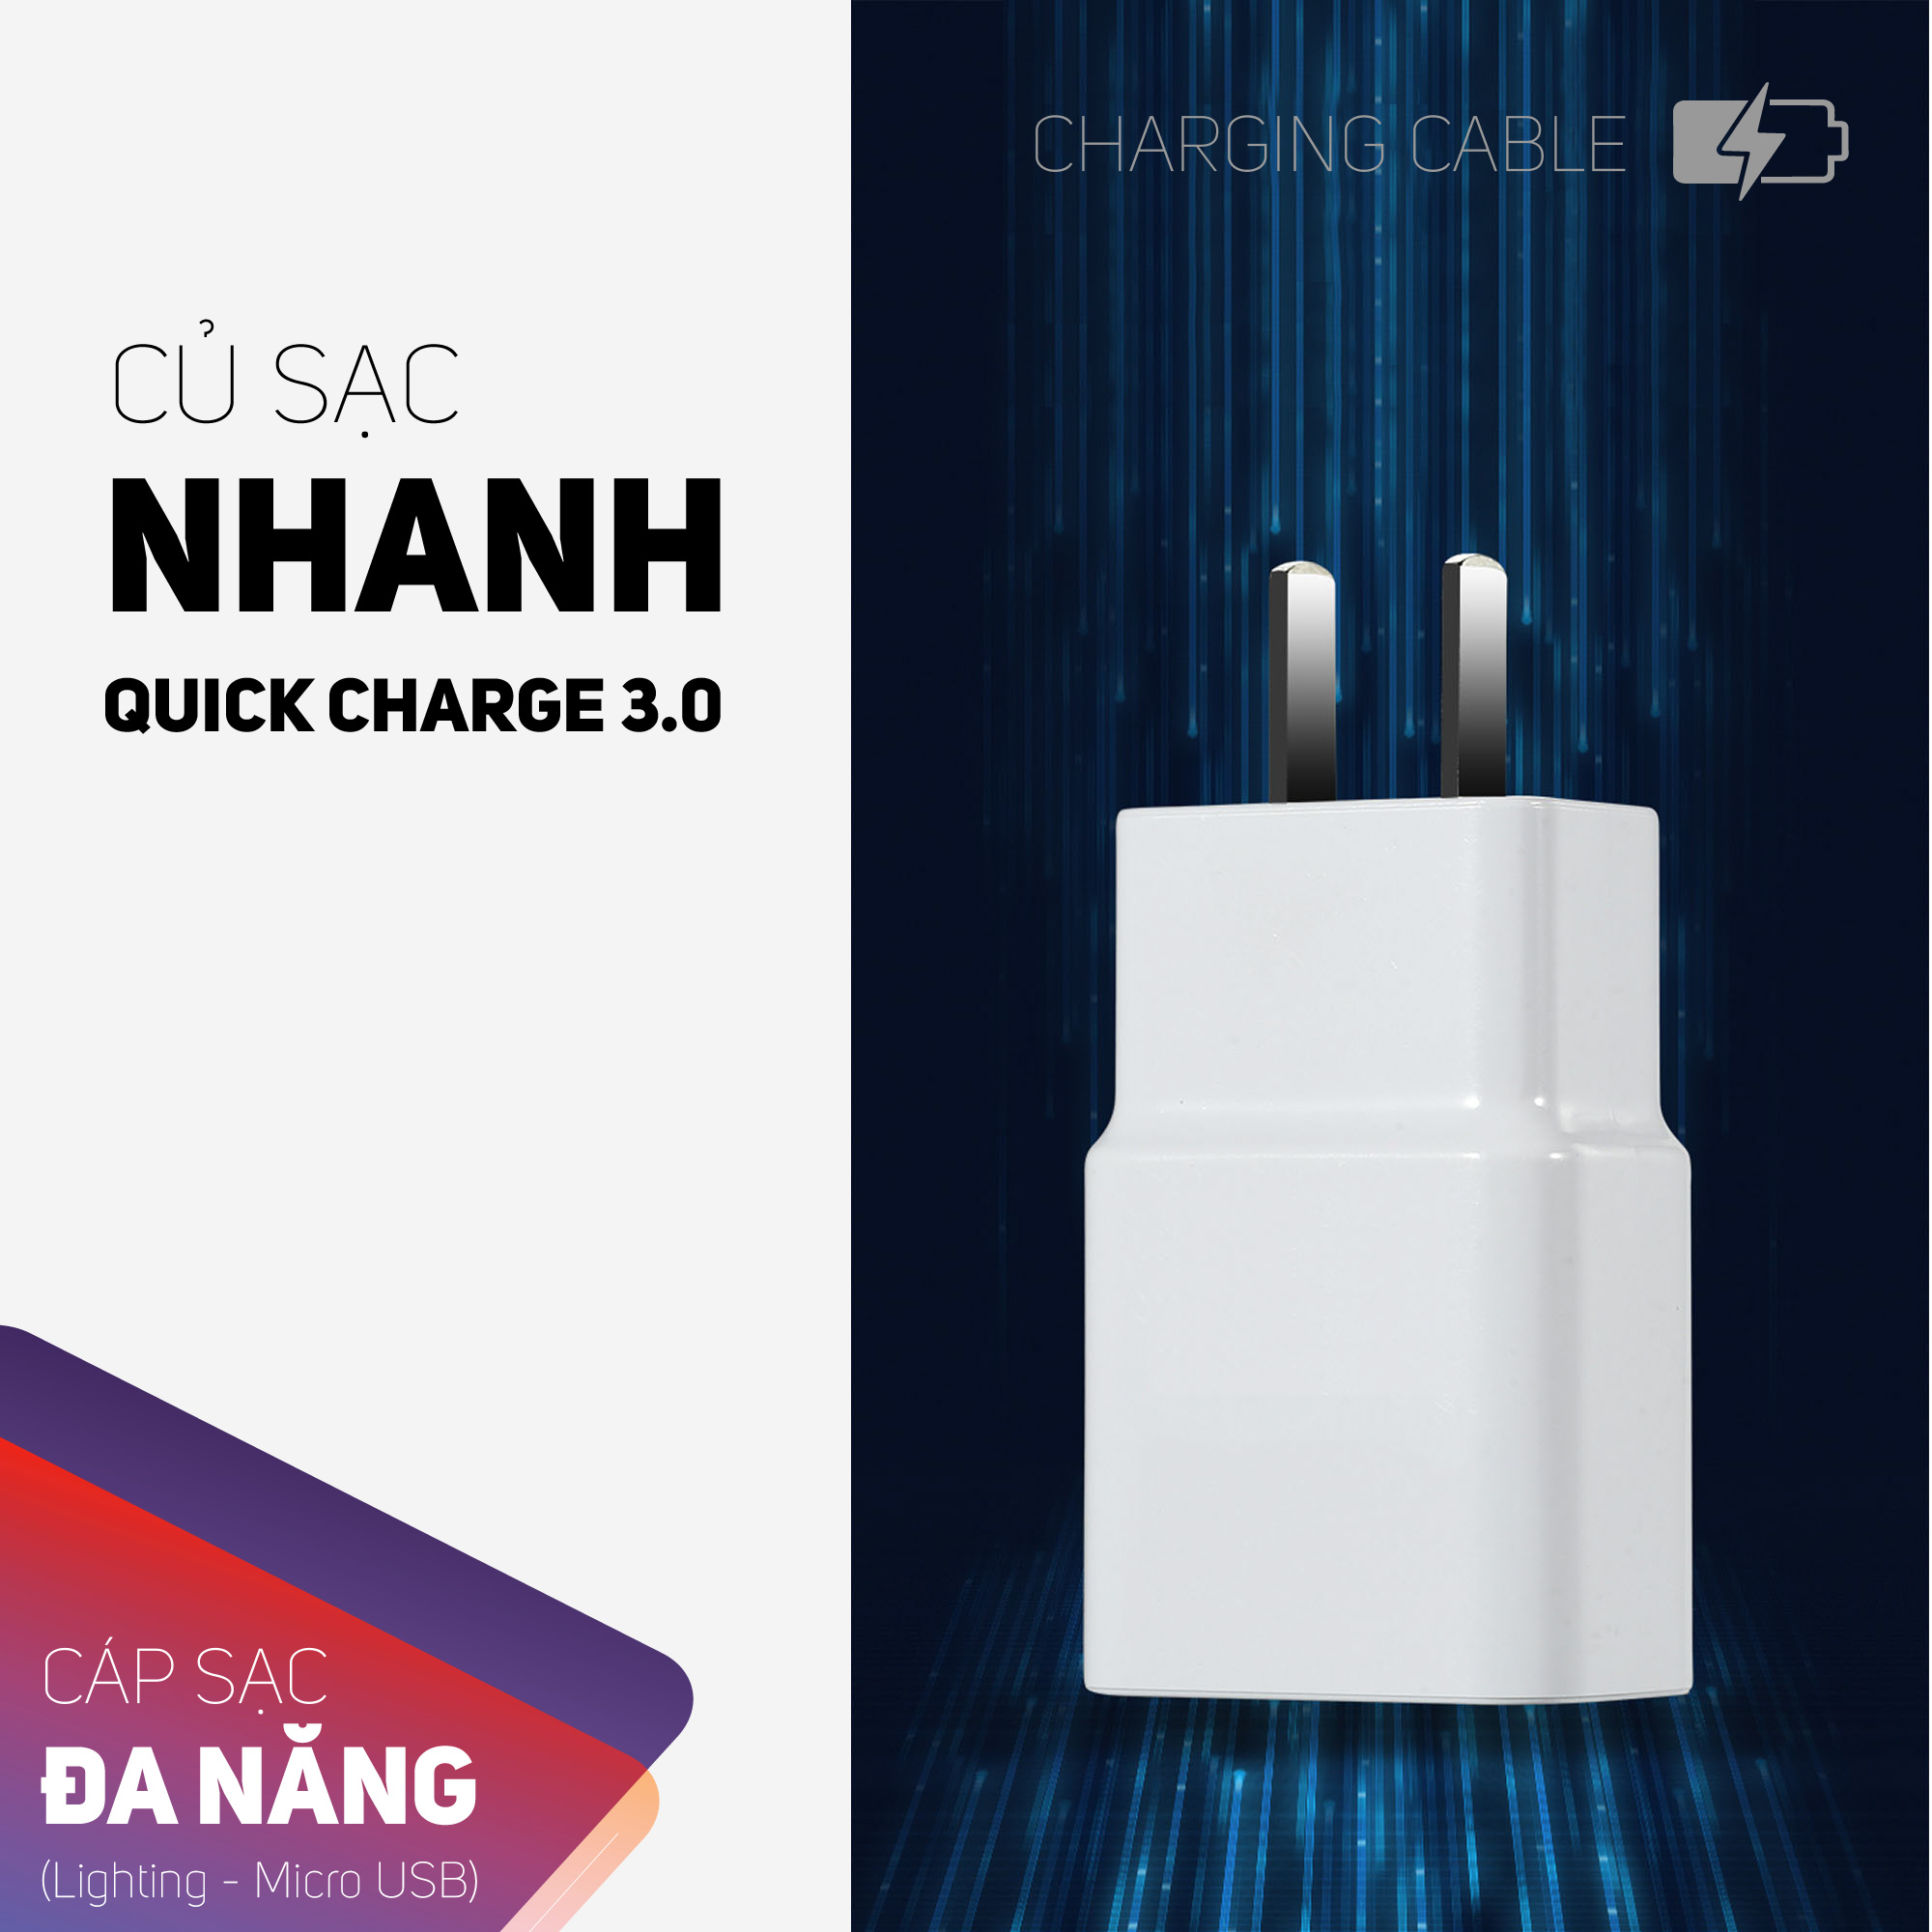 Bộ cáp sạc Lighting kèm theo củ sạc Quick charge 3.0,dây được bọc vải chắc chắn chọn màu ngẫu nhiên,củ sạc và cáp sạc nhanh tiện lợi có thể sạc hầu hết các dòng điện thoại trên thị trường